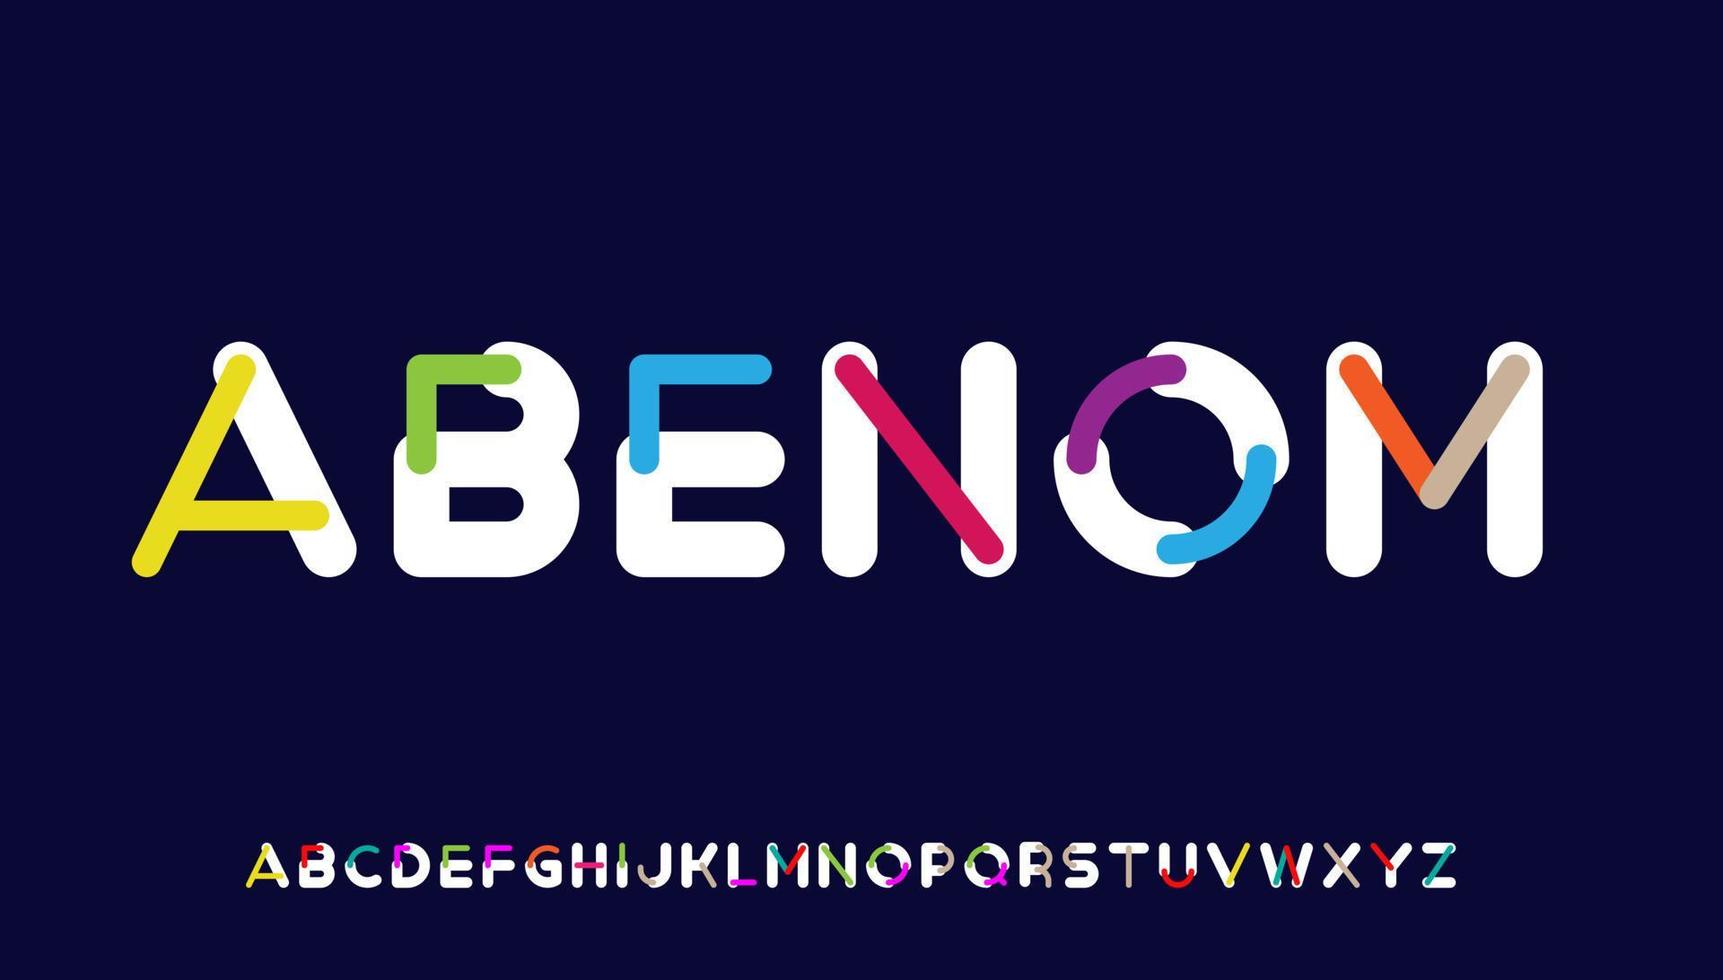 création de logo de lettre alphabet majuscule calligraphie minimale colorée vecteur